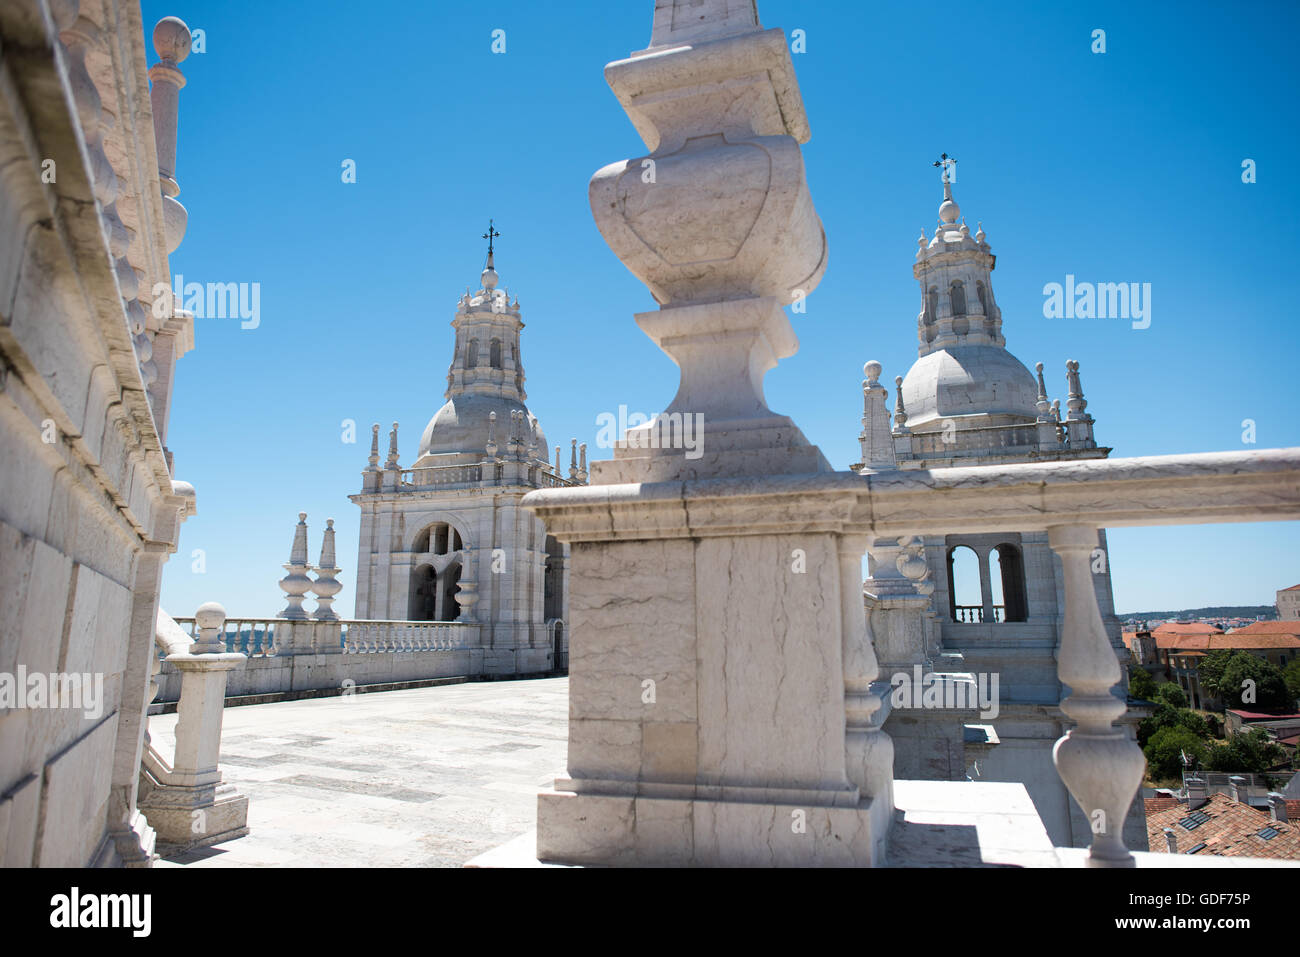 Lisbonne, Portugal - Le monastère de São Vicente de Fora est une église du xviie siècle et un monastère dans le quartier Alfama de Lisbonne. Il dispose de sections richement décoré dans le style baroque ainsi que le panthéon Braganza, où les rois qui ont régné au Portugal entre 1640 et 1910 sont inhumés. Banque D'Images